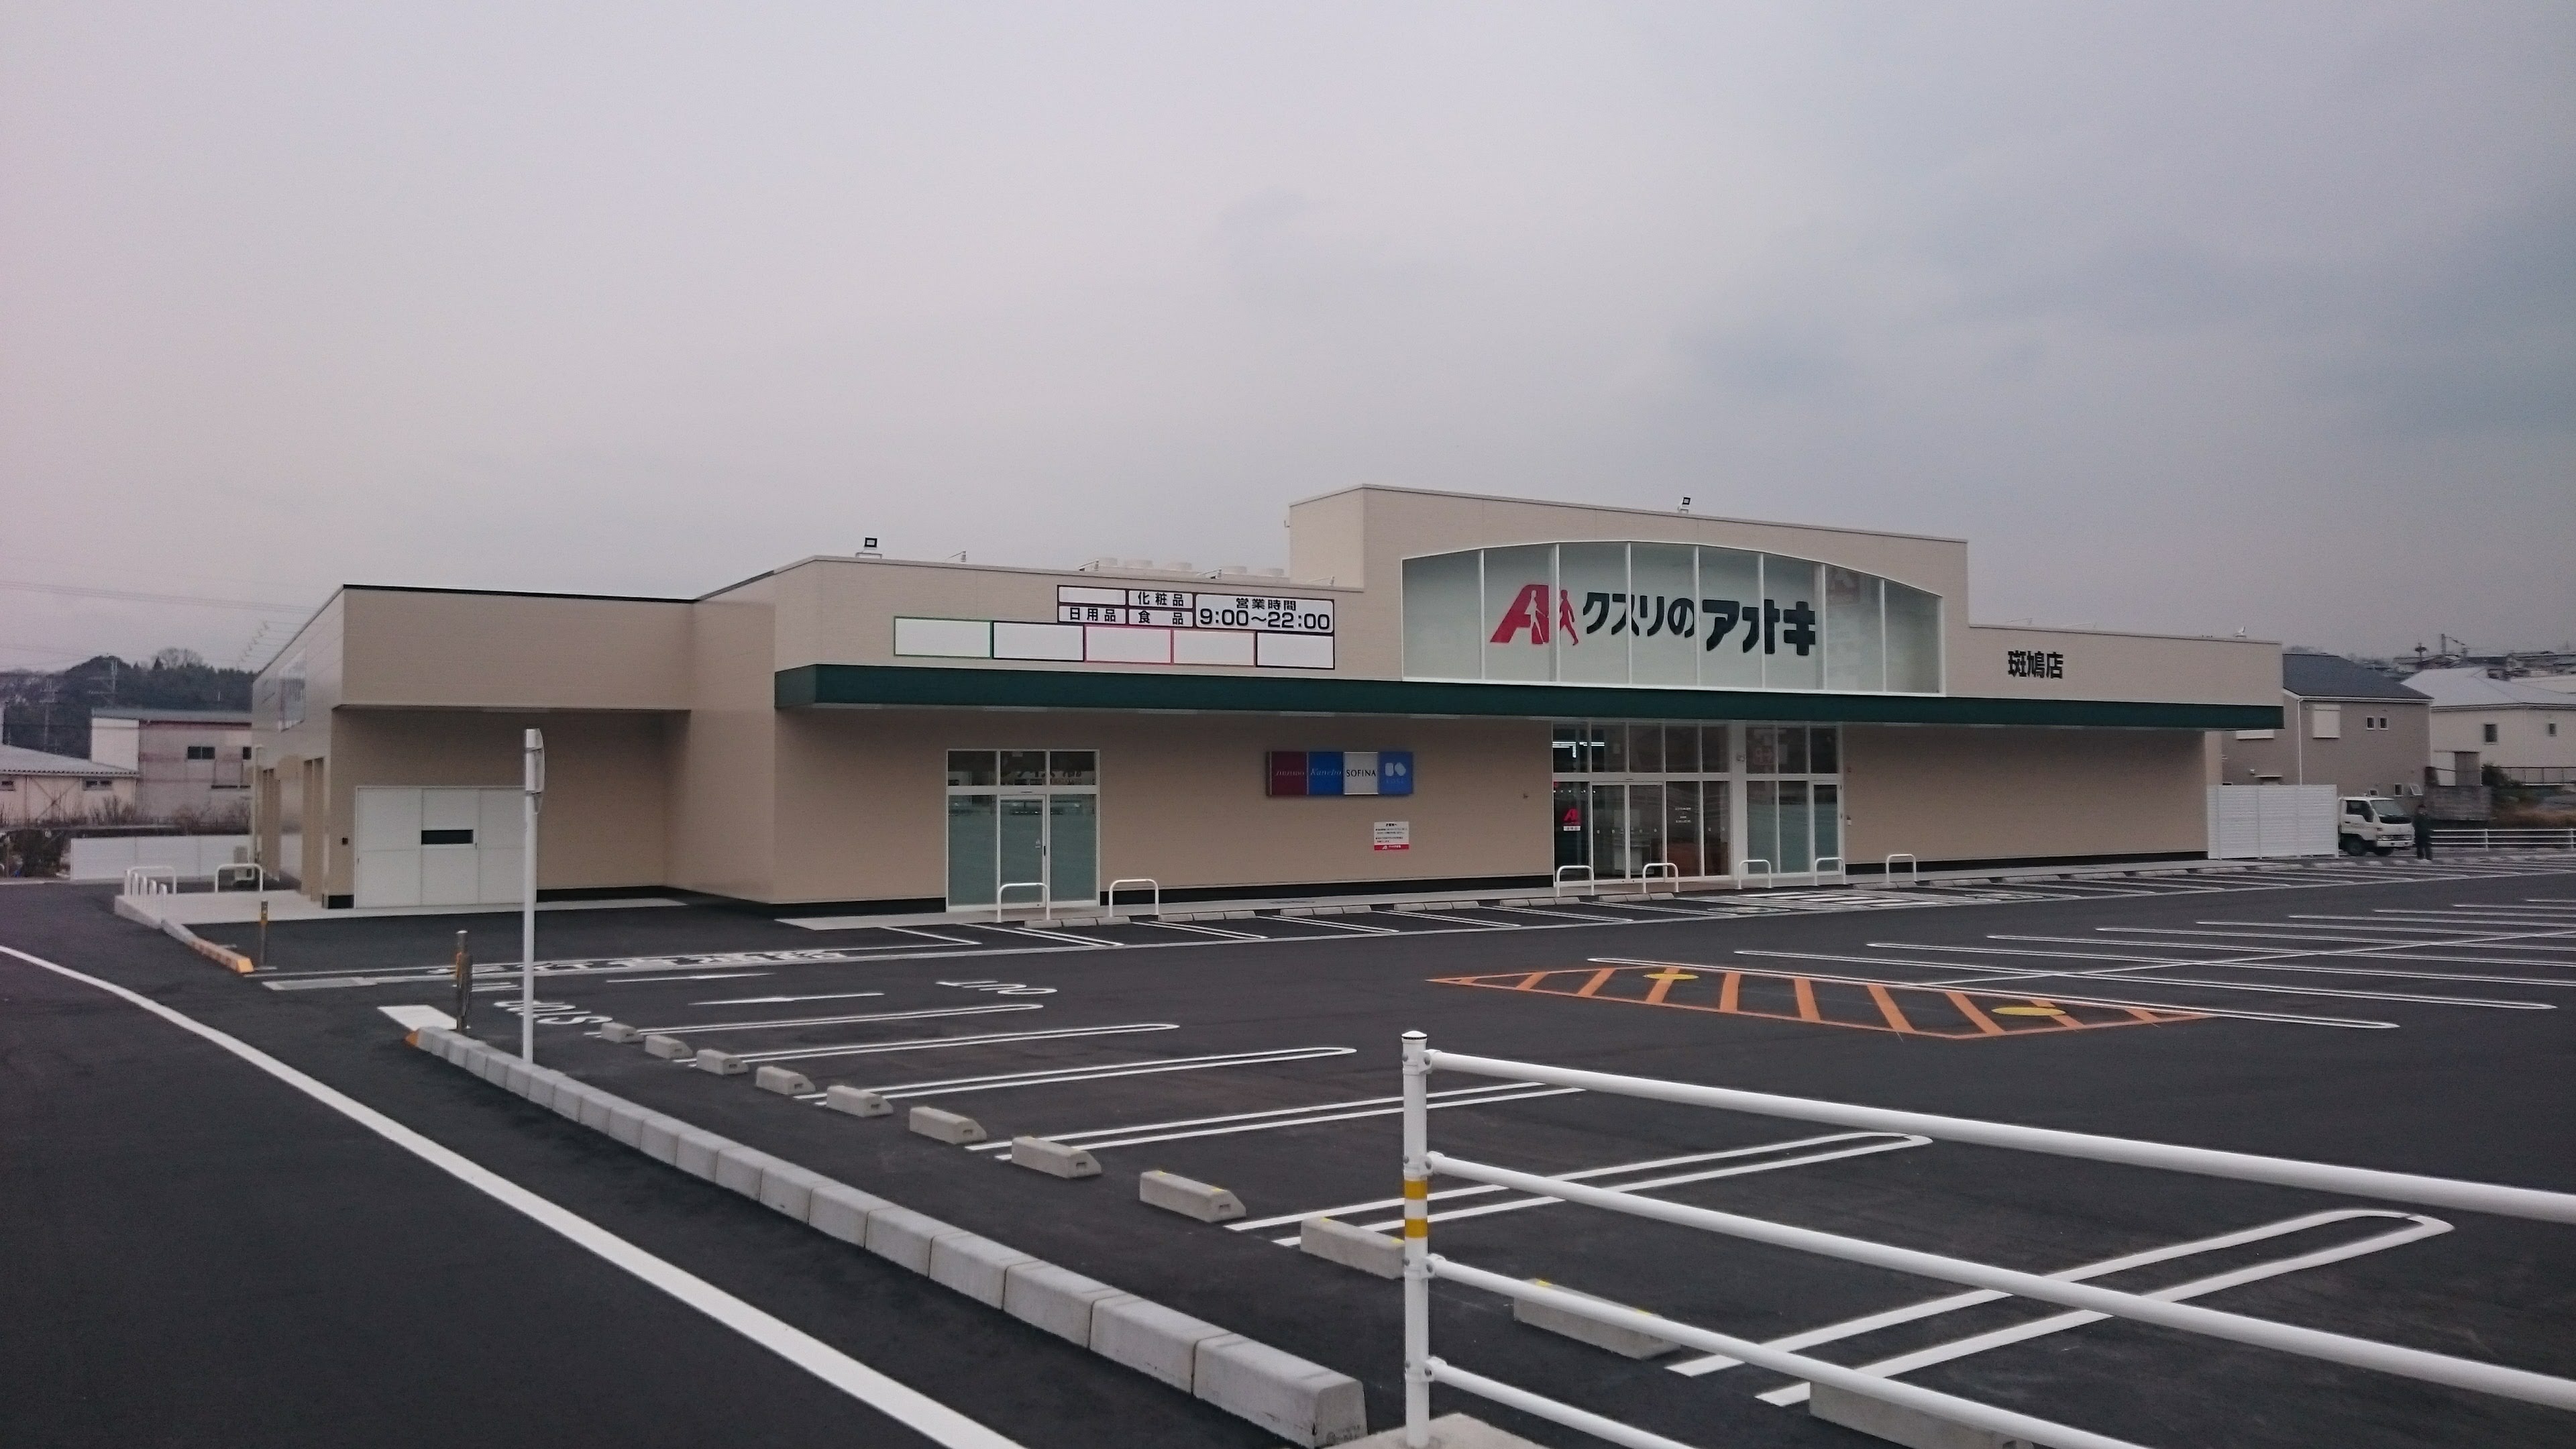 クスリのアオキ斑鳩店 クスリのアオキ Mt Plan 石川県金沢市の商業施設や流通店舗の企画 設計 監理を全国対応